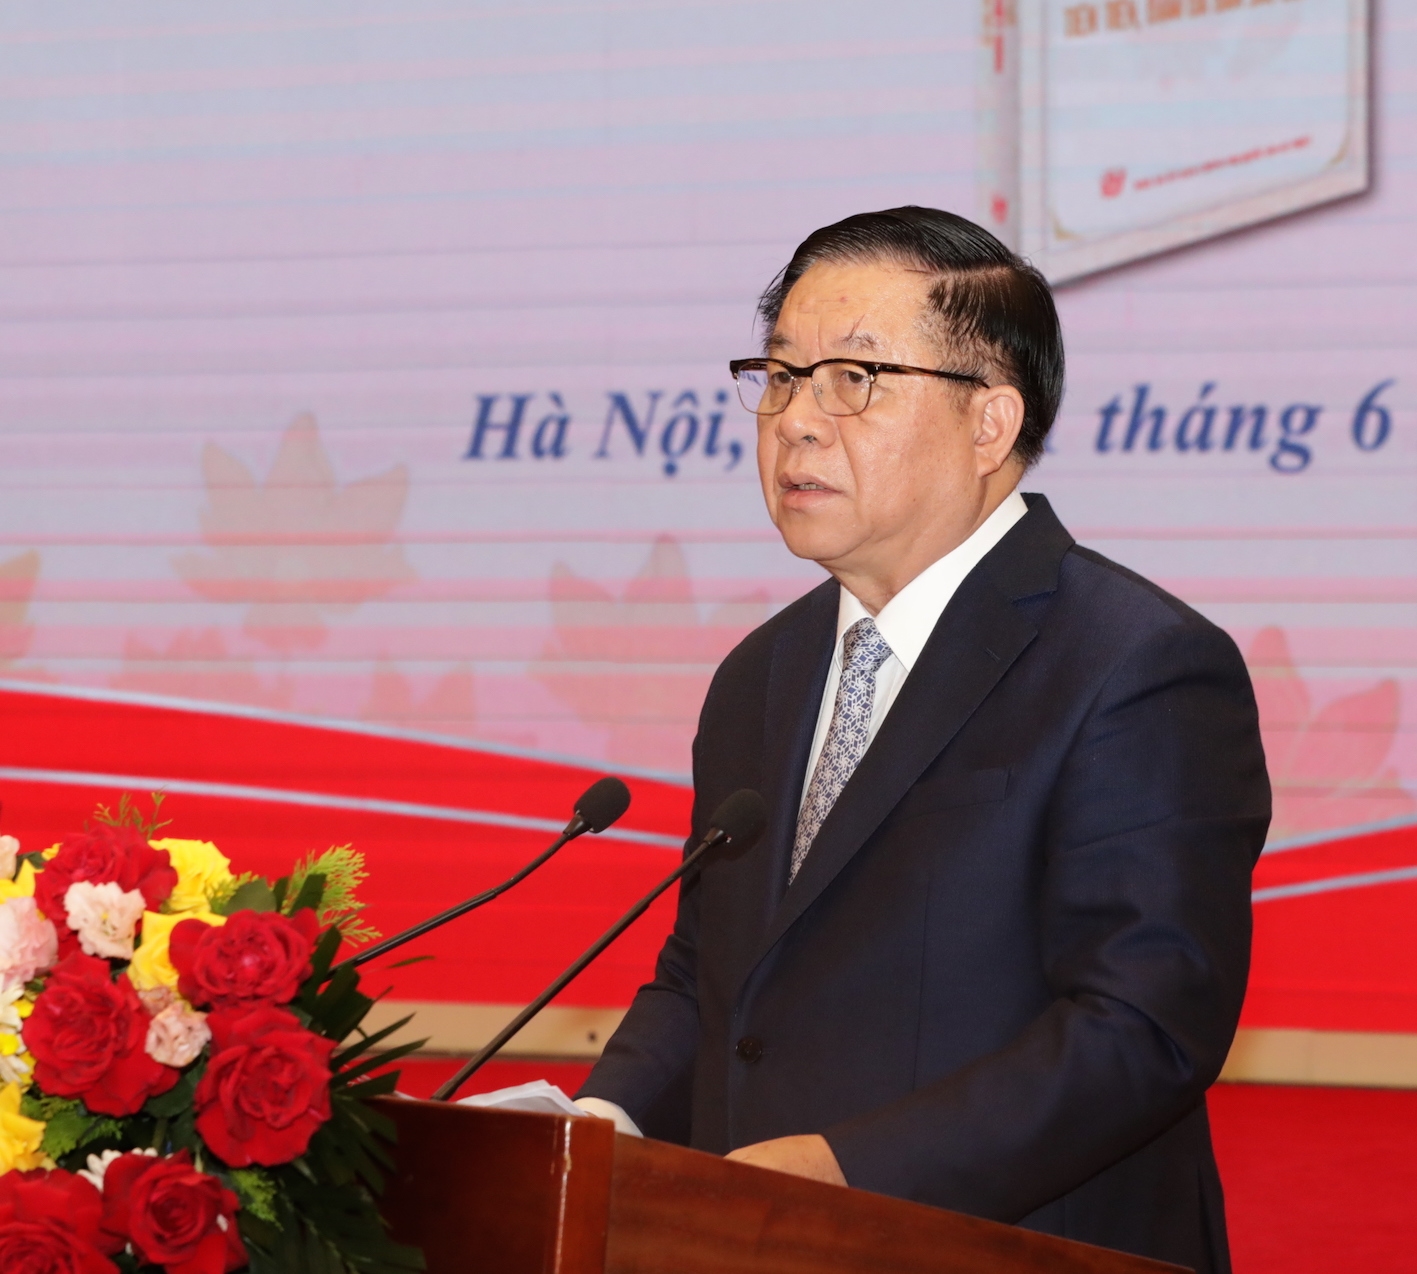 Đồng chí Nguyễn Trọng Nghĩa, Ủy viên Bộ Chính trị, Bí thư Trung ương Đảng, Trưởng Ban Tuyên giáo Trung ương phát biểu.